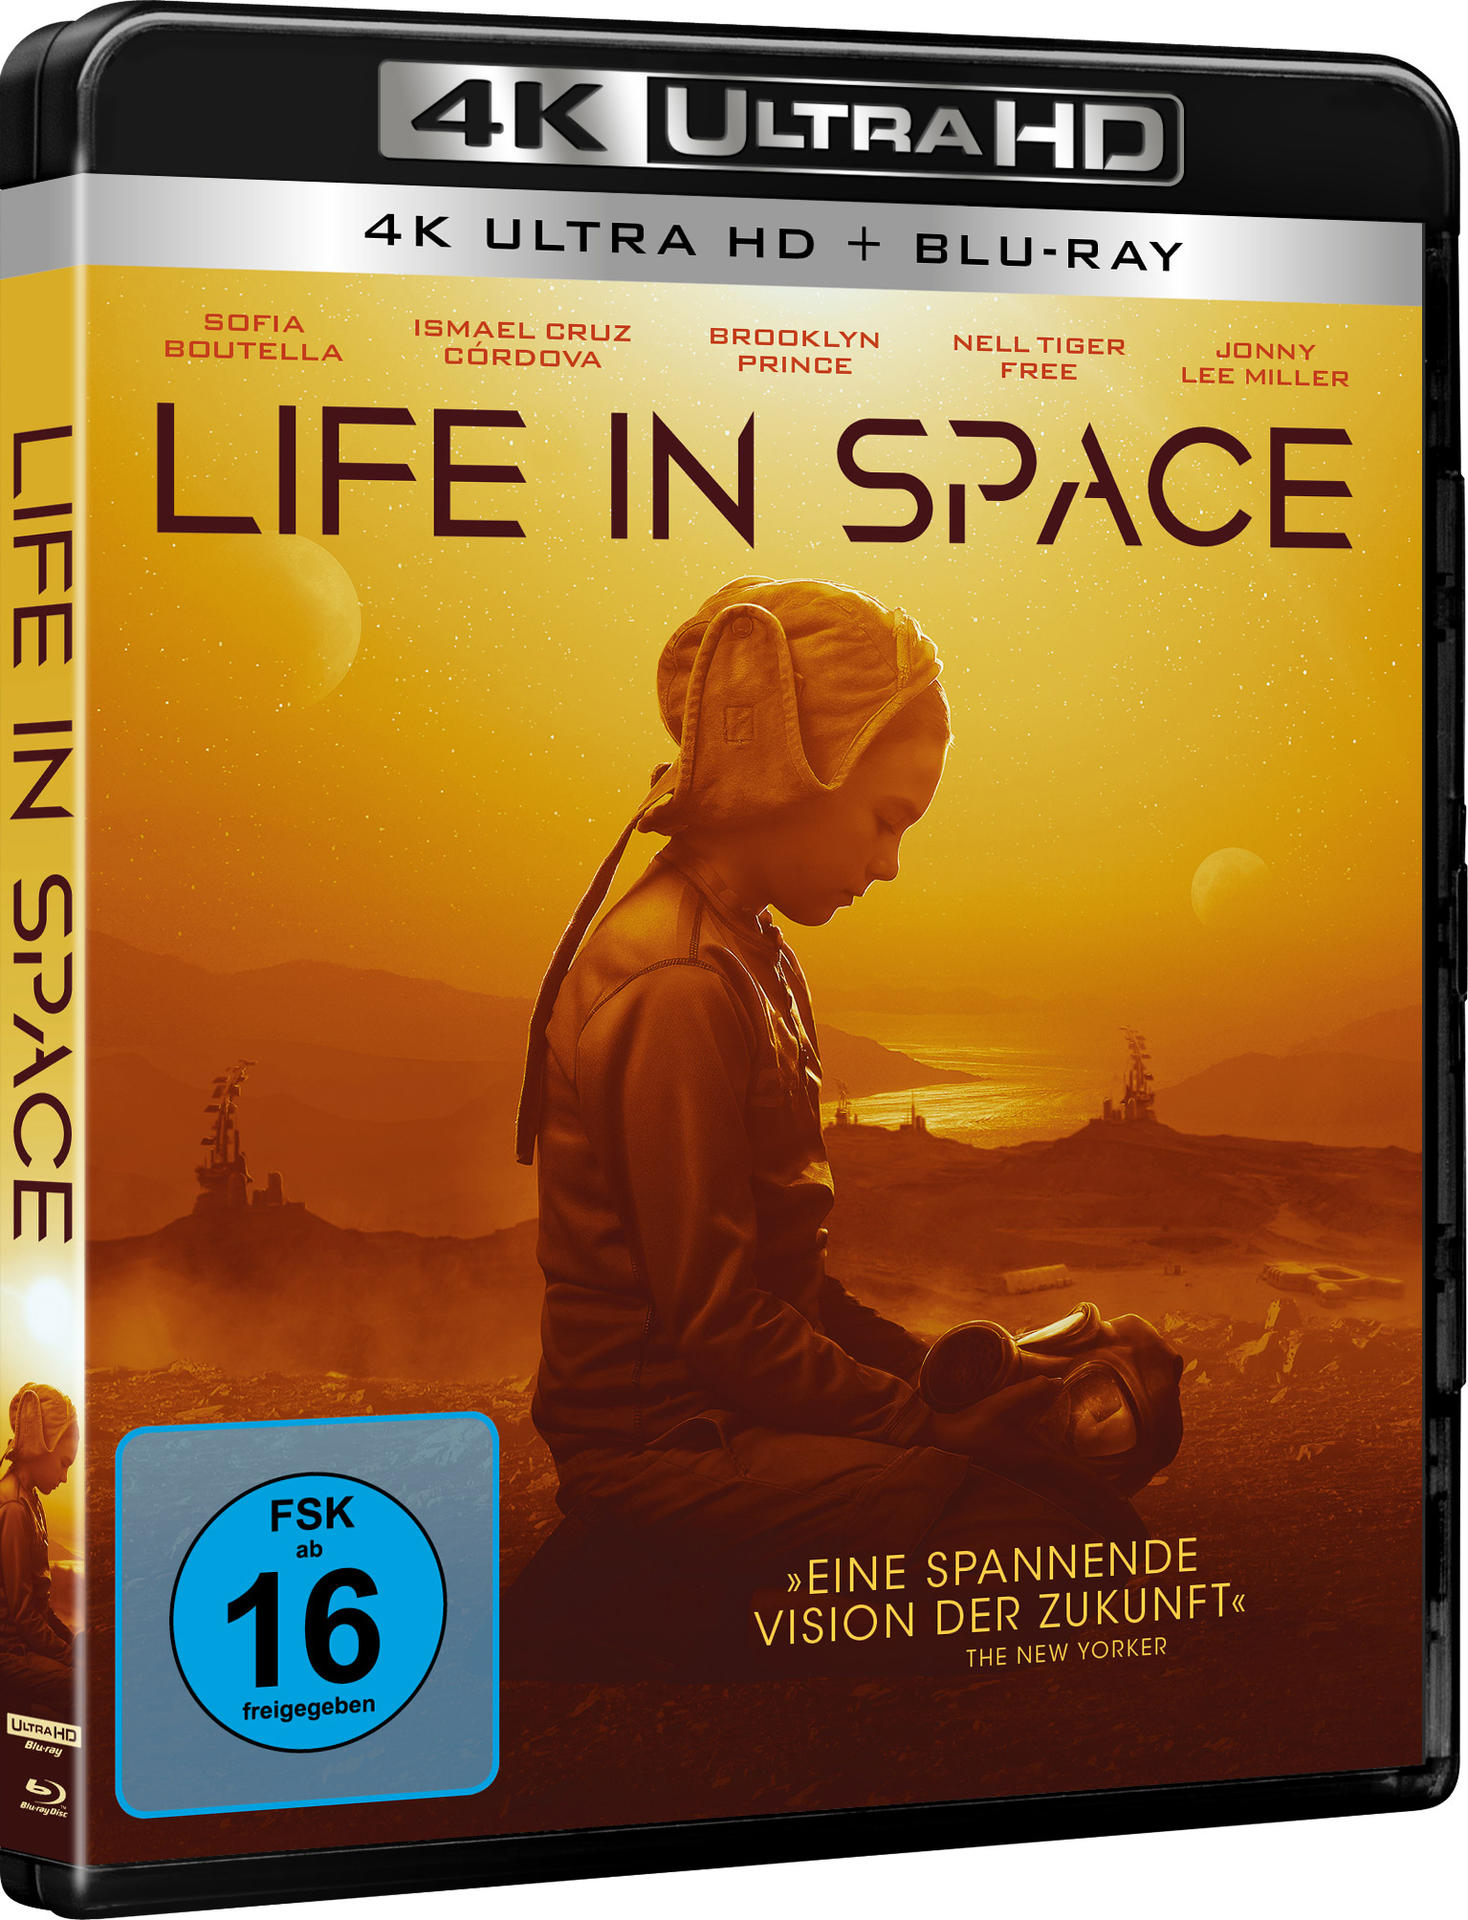 HD Blu-ray 4K Blu-ray + in Ultra Life Space